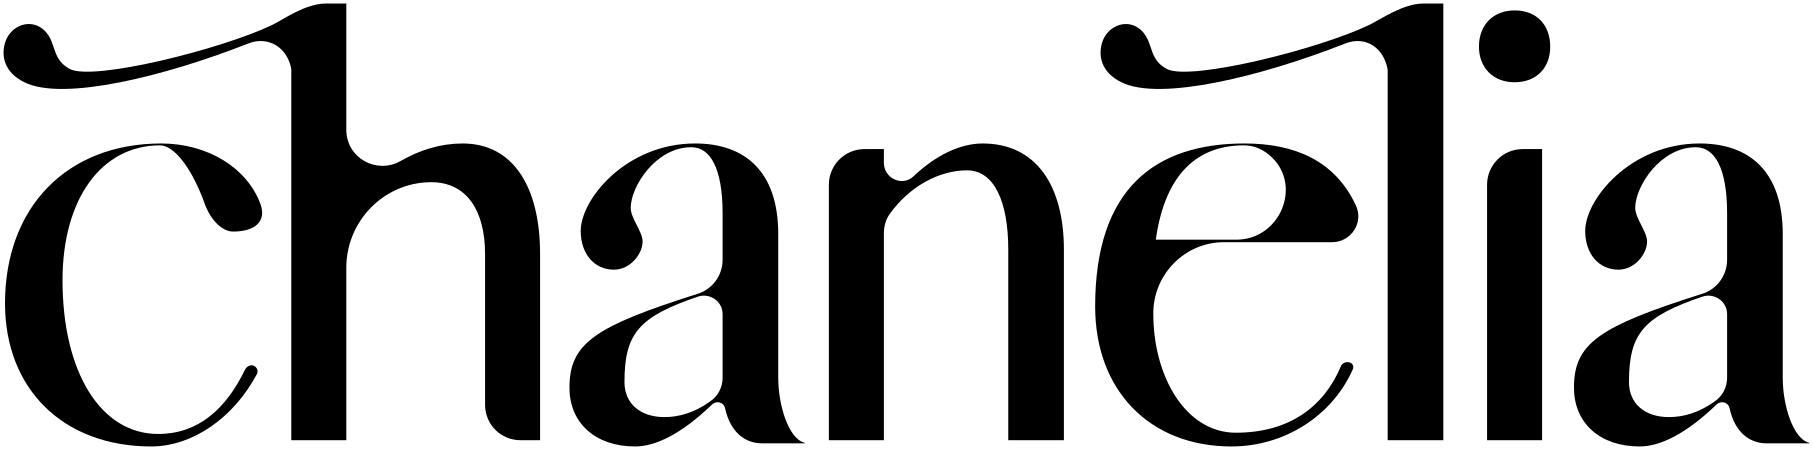 chanelia.com logo